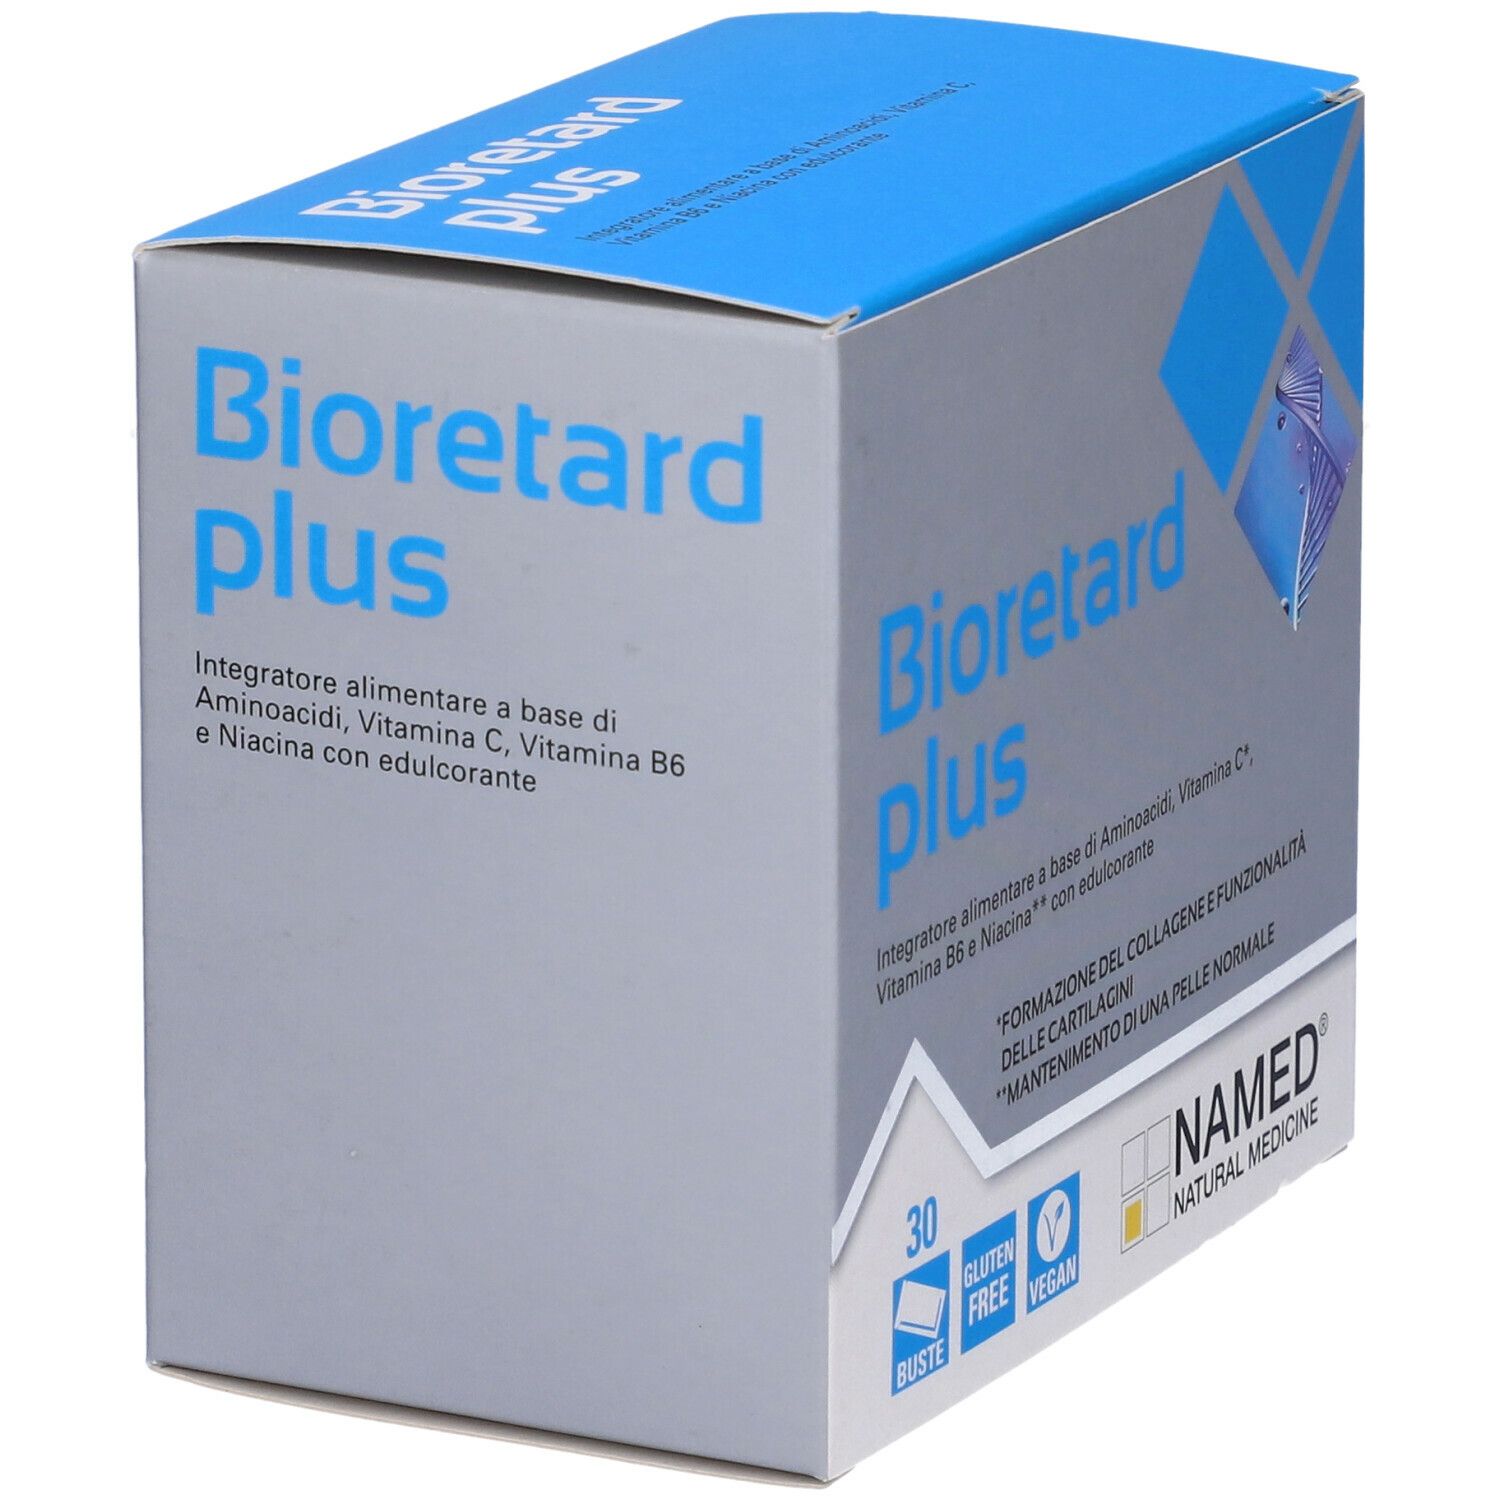 Bioretard Plus